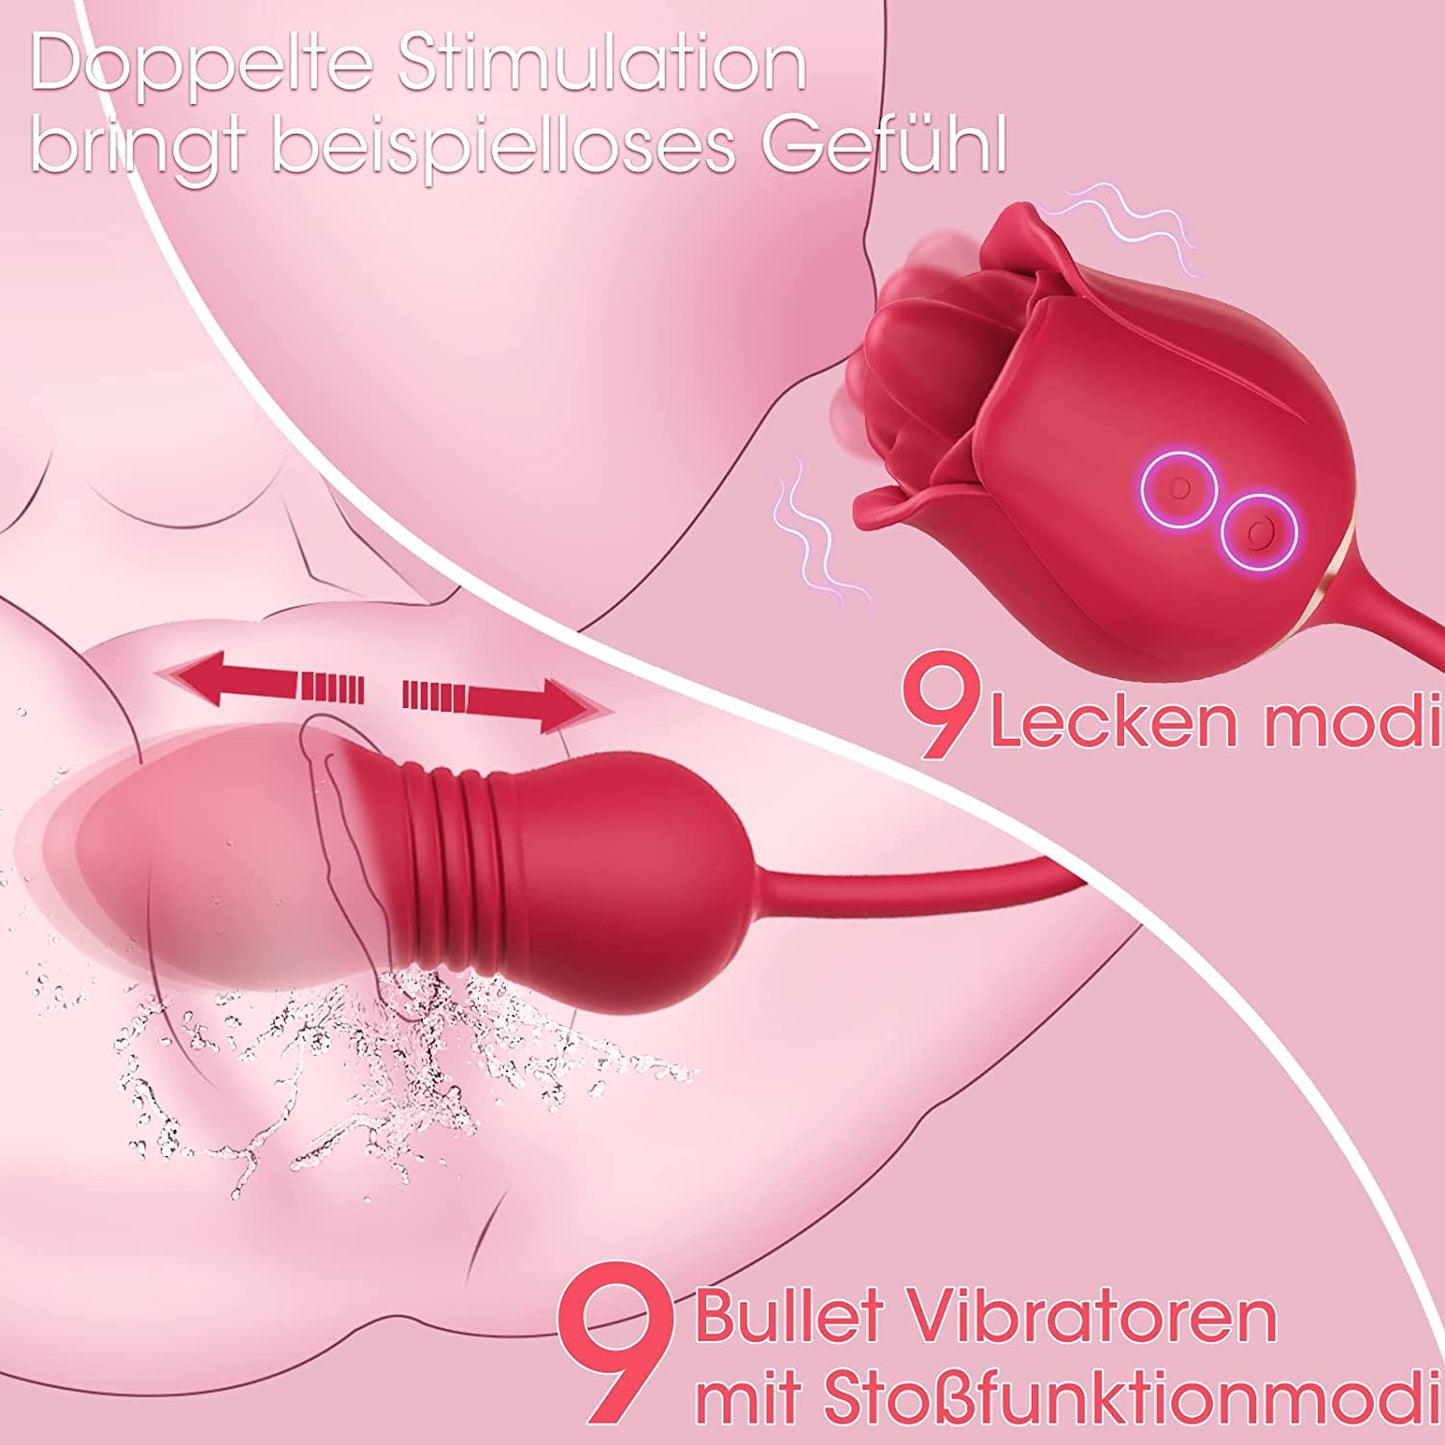 3 in 1 Bullet Vibrator Clit und Nippel Stimulator mit 9 Leckenmodi & 9 Vibration